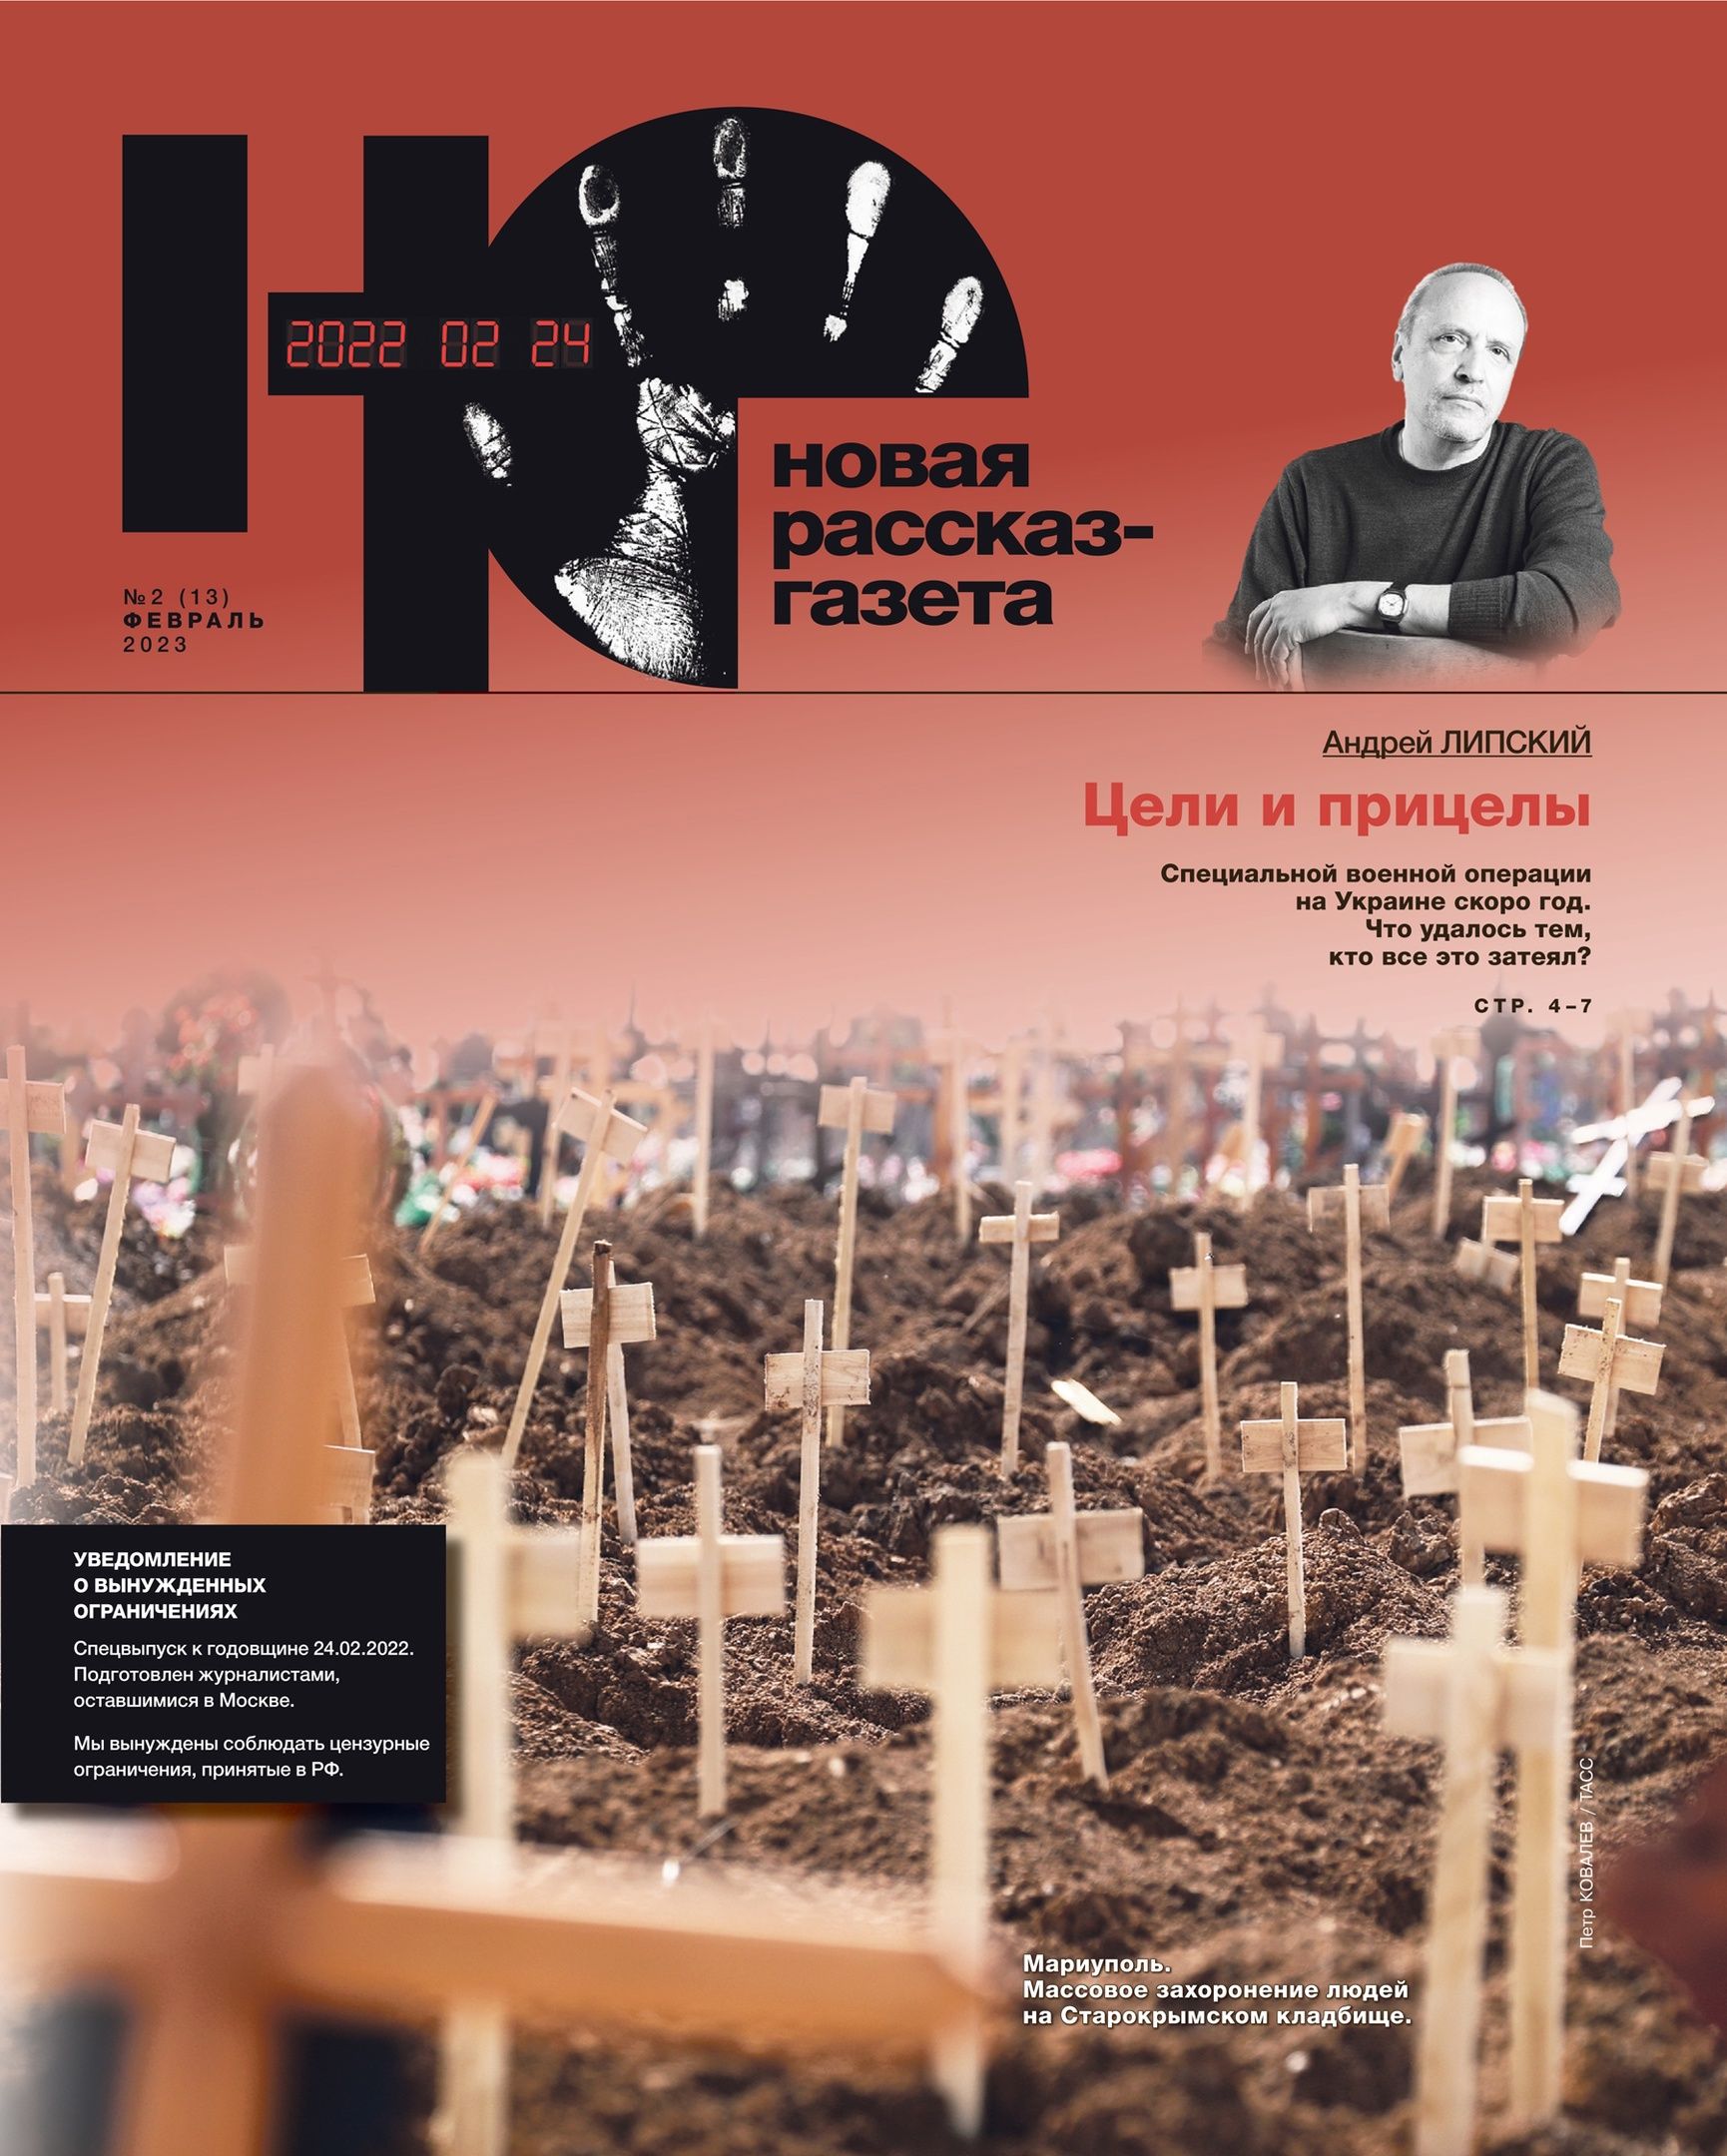 Журнал «Новая рассказ-газета» №2 2023 русский баптизм и православие